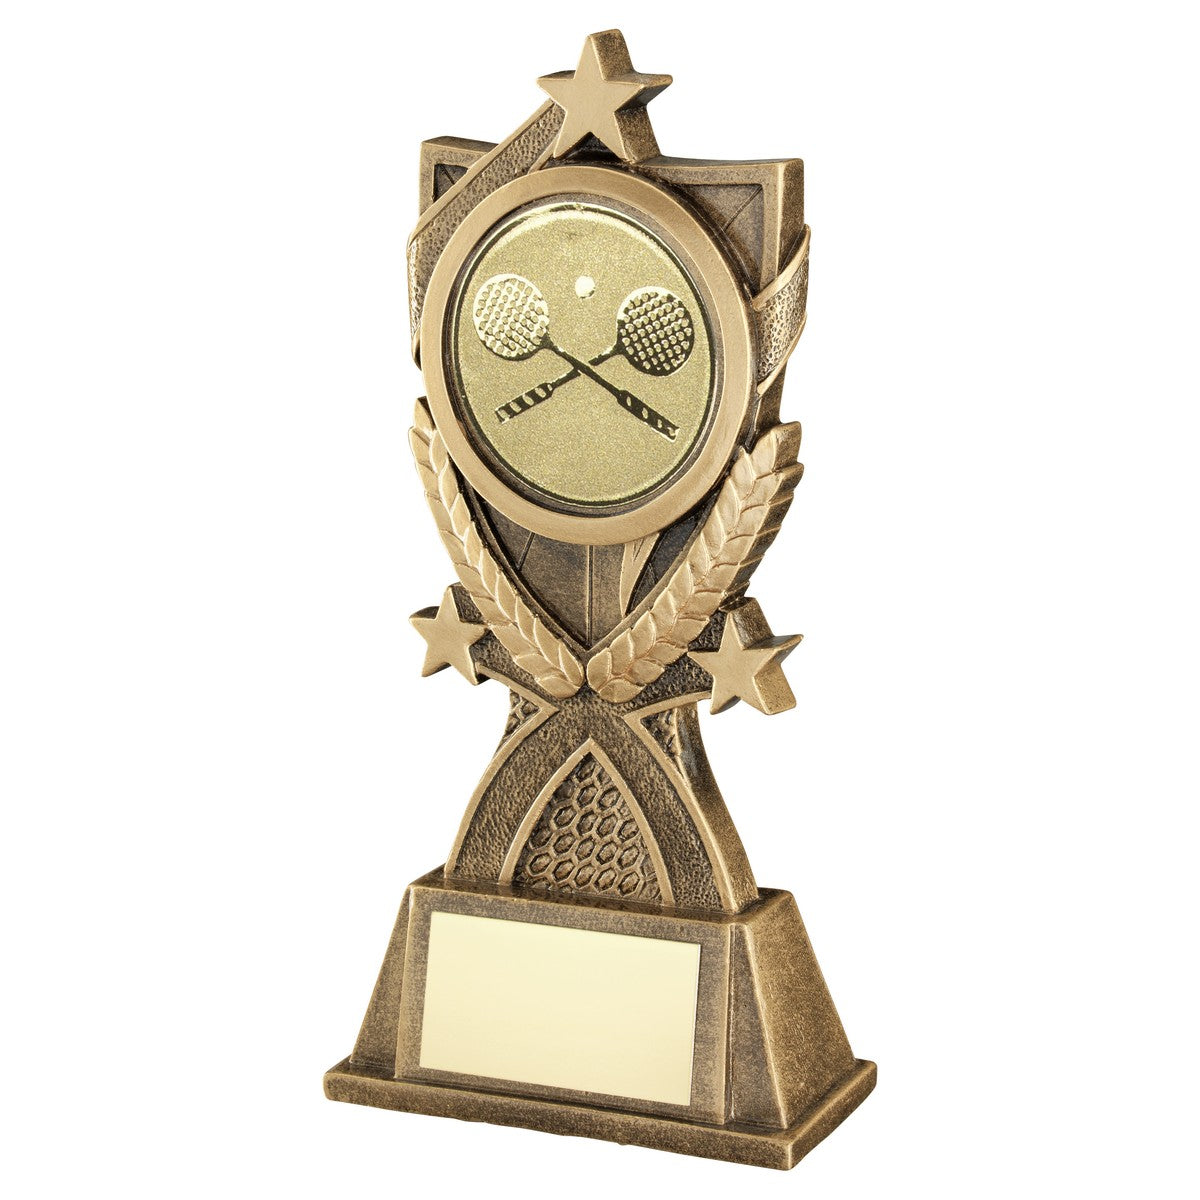 Squash '3 Star Wreath' Trophy